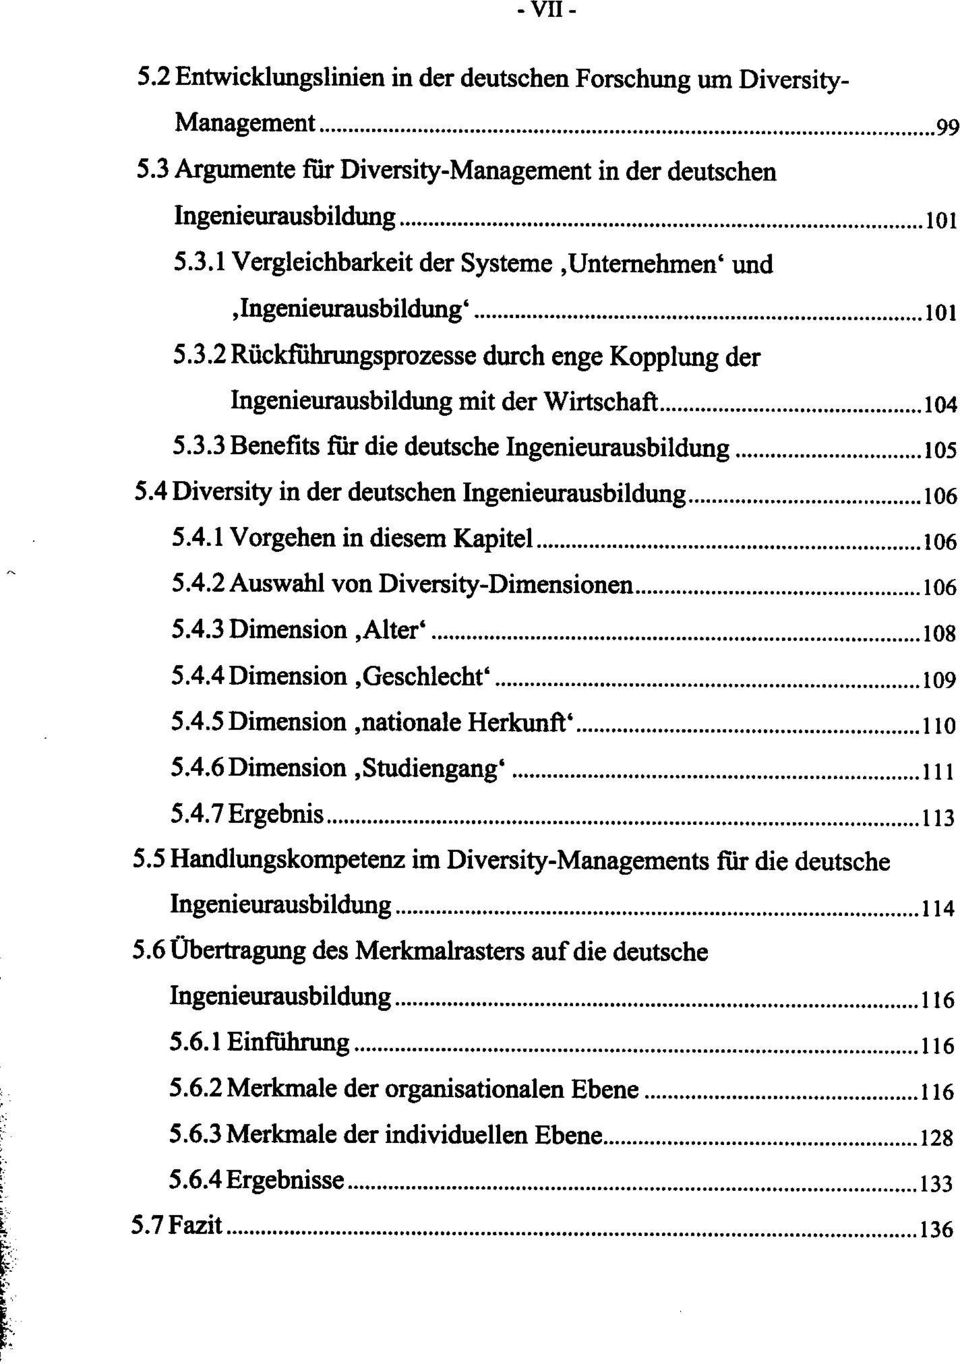 4 Diversity in der deutschen Ingenieurausbildung 106 5.4.1 Vorgehen in diesem Kapitel 106 5.4.2 Auswahl von Diversity-Dimensionen 106 5.4.3 Dimension.Alter' 108 5.4.4 Dimension.Geschlecht' 109 5.4.5 Dimension.